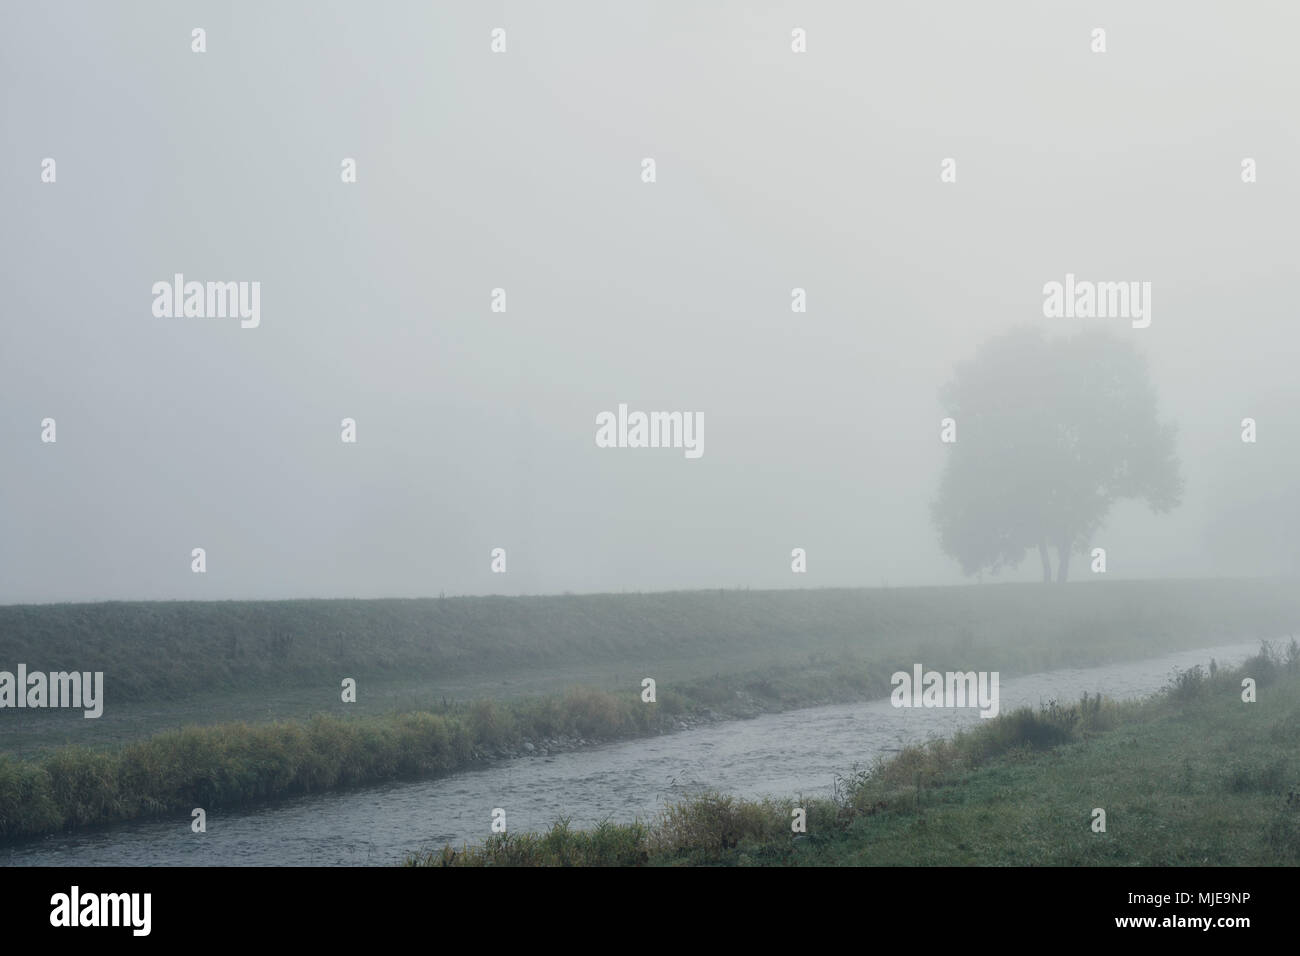 Rivière avec riverside et arbre dans le brouillard sur un canal Banque D'Images